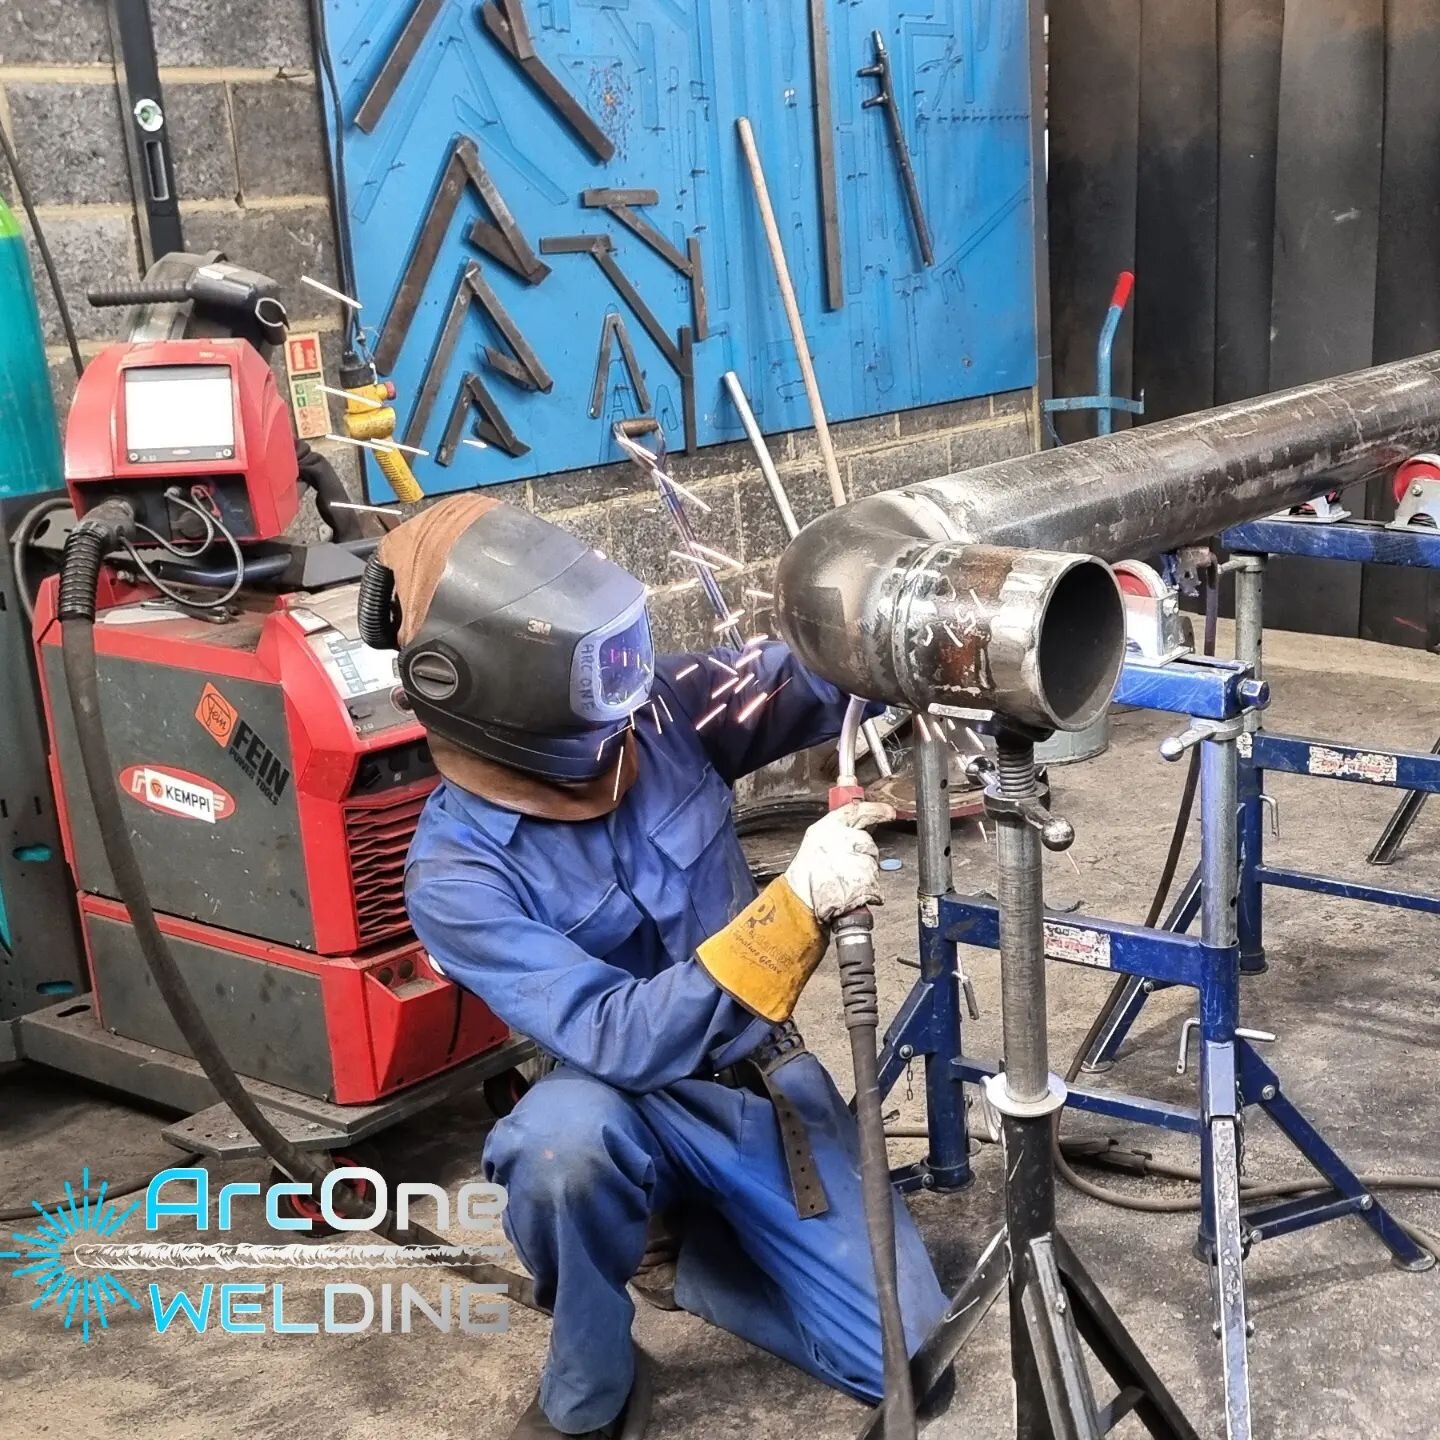 Thumbnail for a future youtube video 
■
□
■
□
■
□
#welding #welder #fabrication #weld #weldporn #weldernation #tigwelding #tig #weldlife #metalwork #weldinglife #steel #metal #migwelding #weldeverydamnday #metalfabrication #welders #engineering #meta